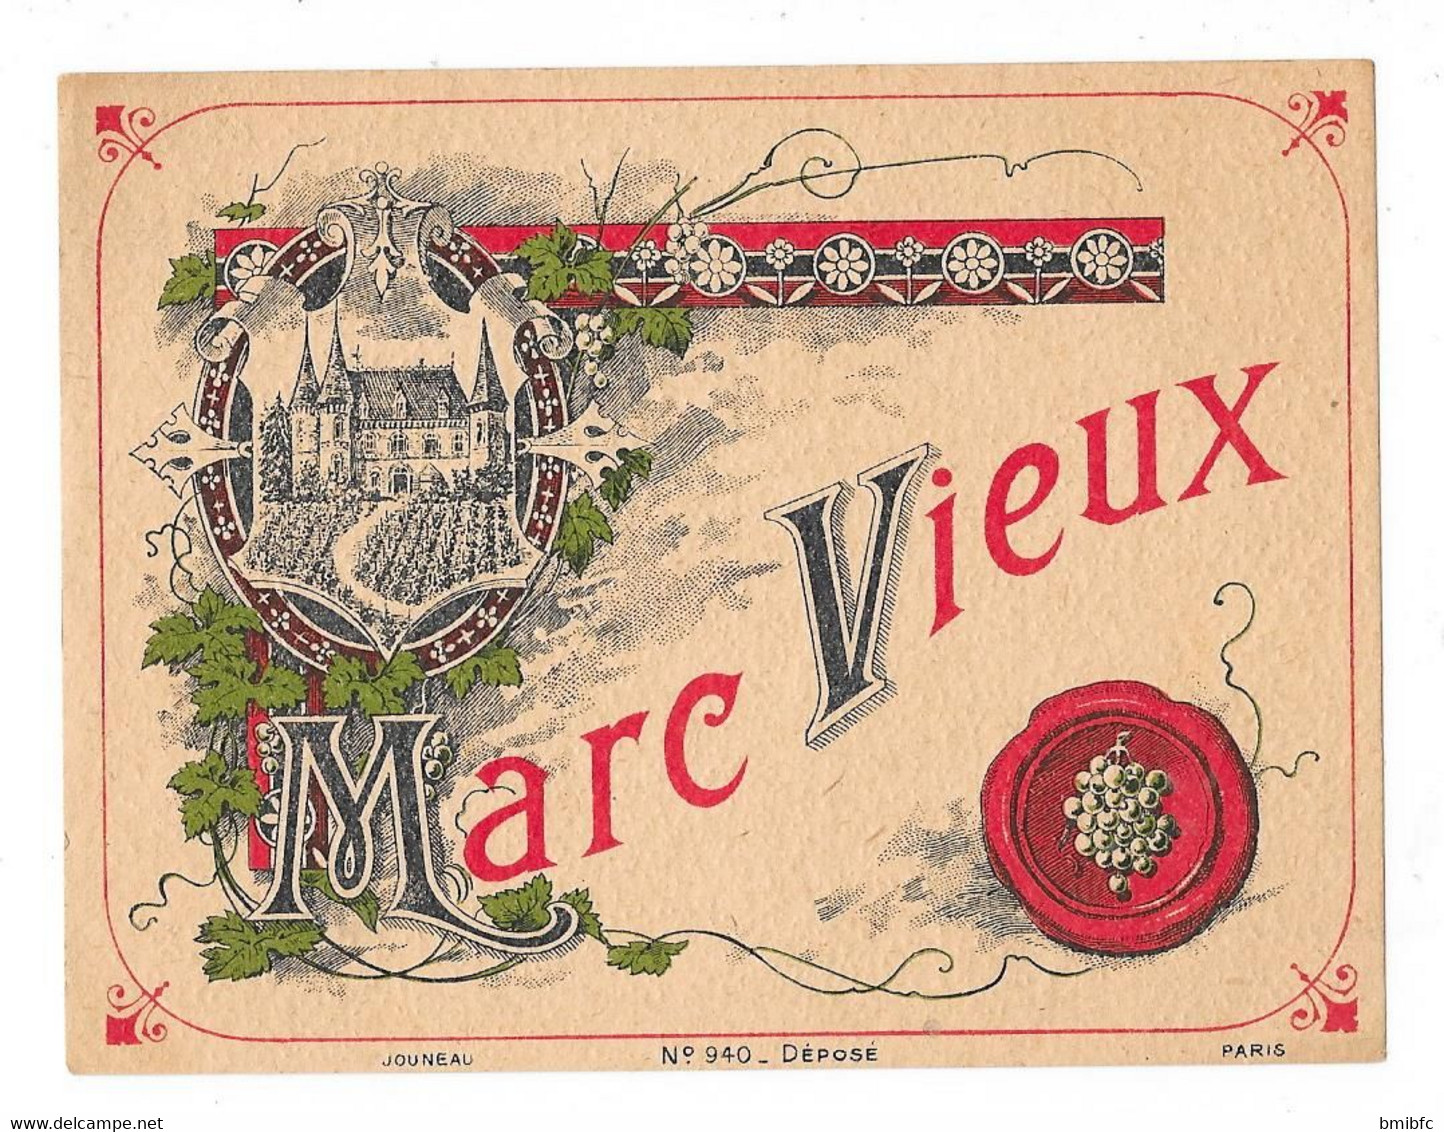 Marc Vieux - Alcohols & Spirits